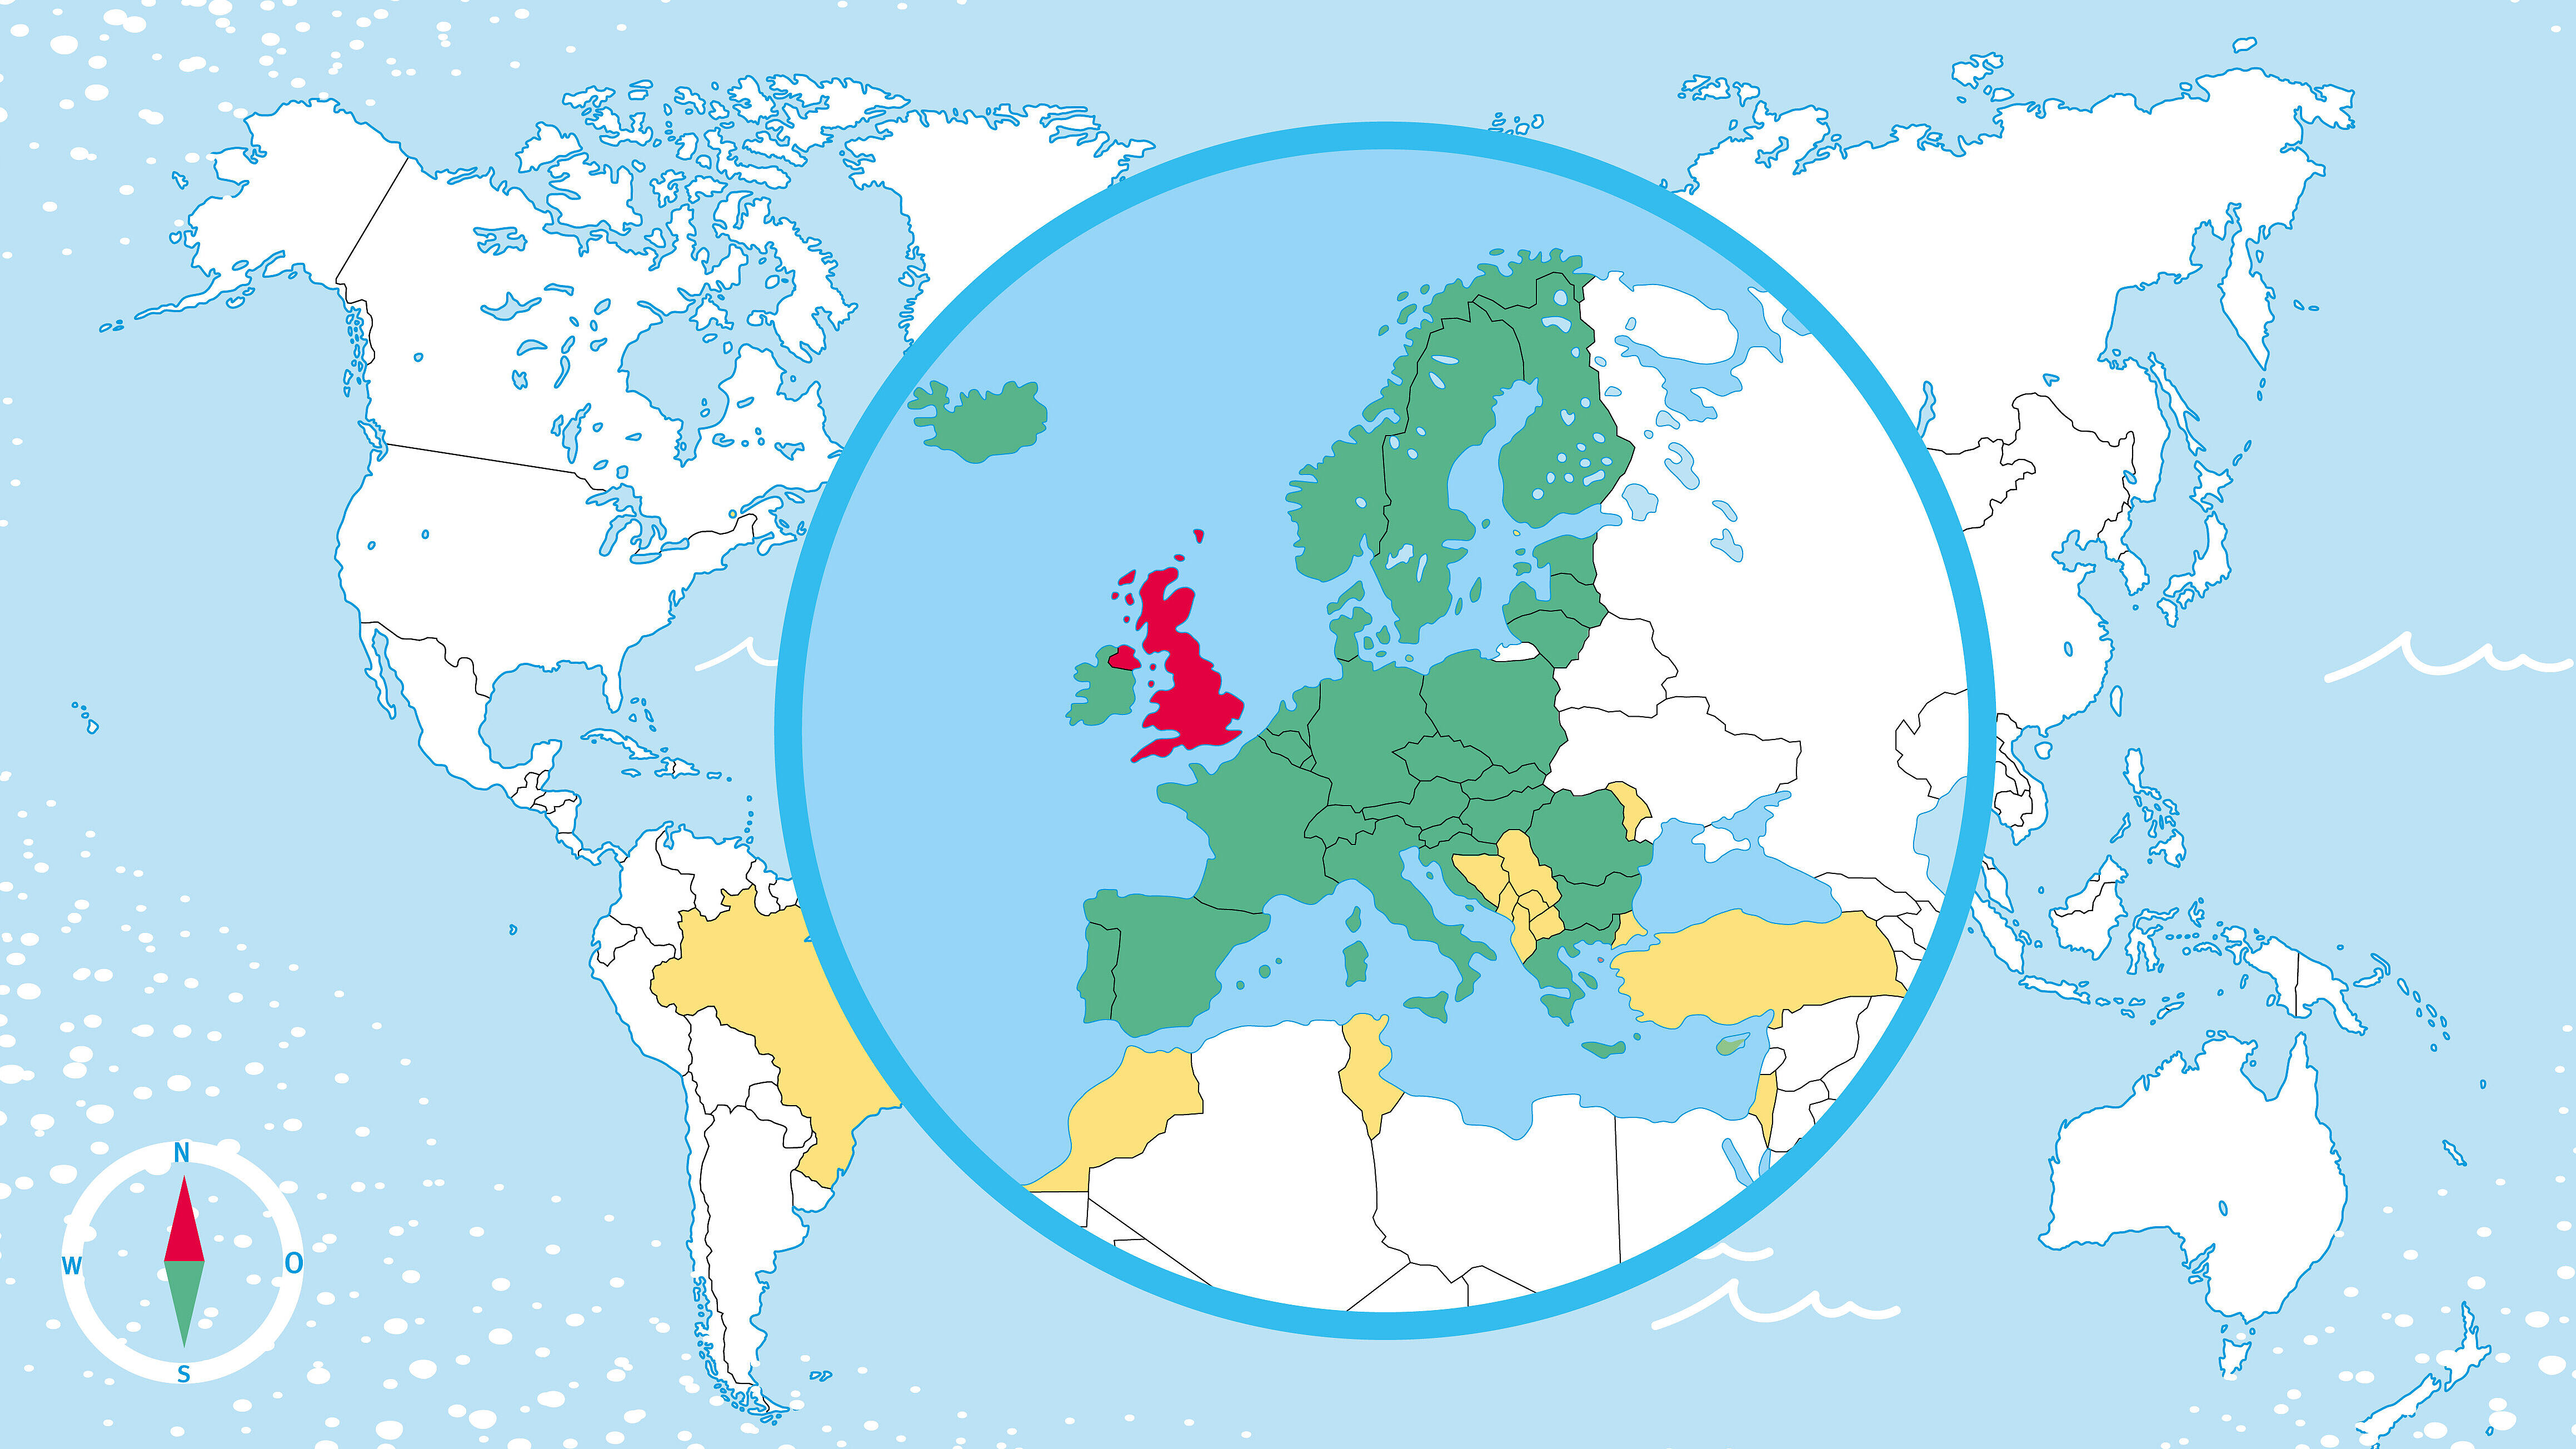 Illustration: Zu sehen ist eine Weltkarte auf hellblauem Hintergrund. In der Mitte sieht man eine kreisförmige Lupenansicht auf Europa. Einige Länder sind grün, gelb oder rot eingefärbt. Unten links ist noch ein Kompass abgebildet.